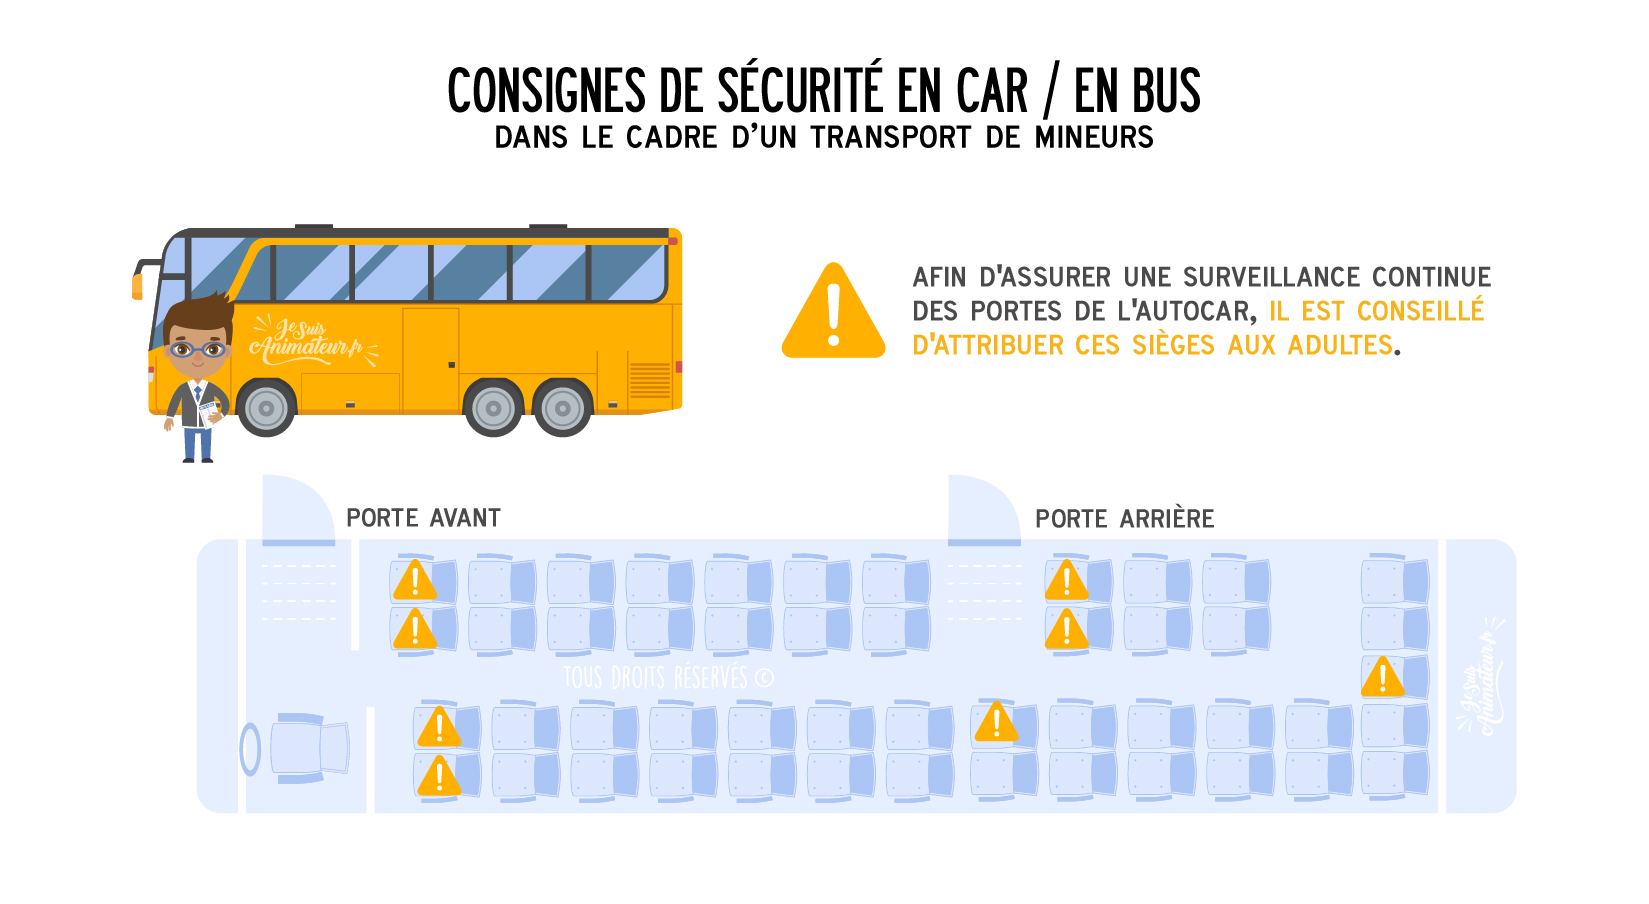 Consignes de sécurité en car / en bus dans le cadre d’un transport de mineurs